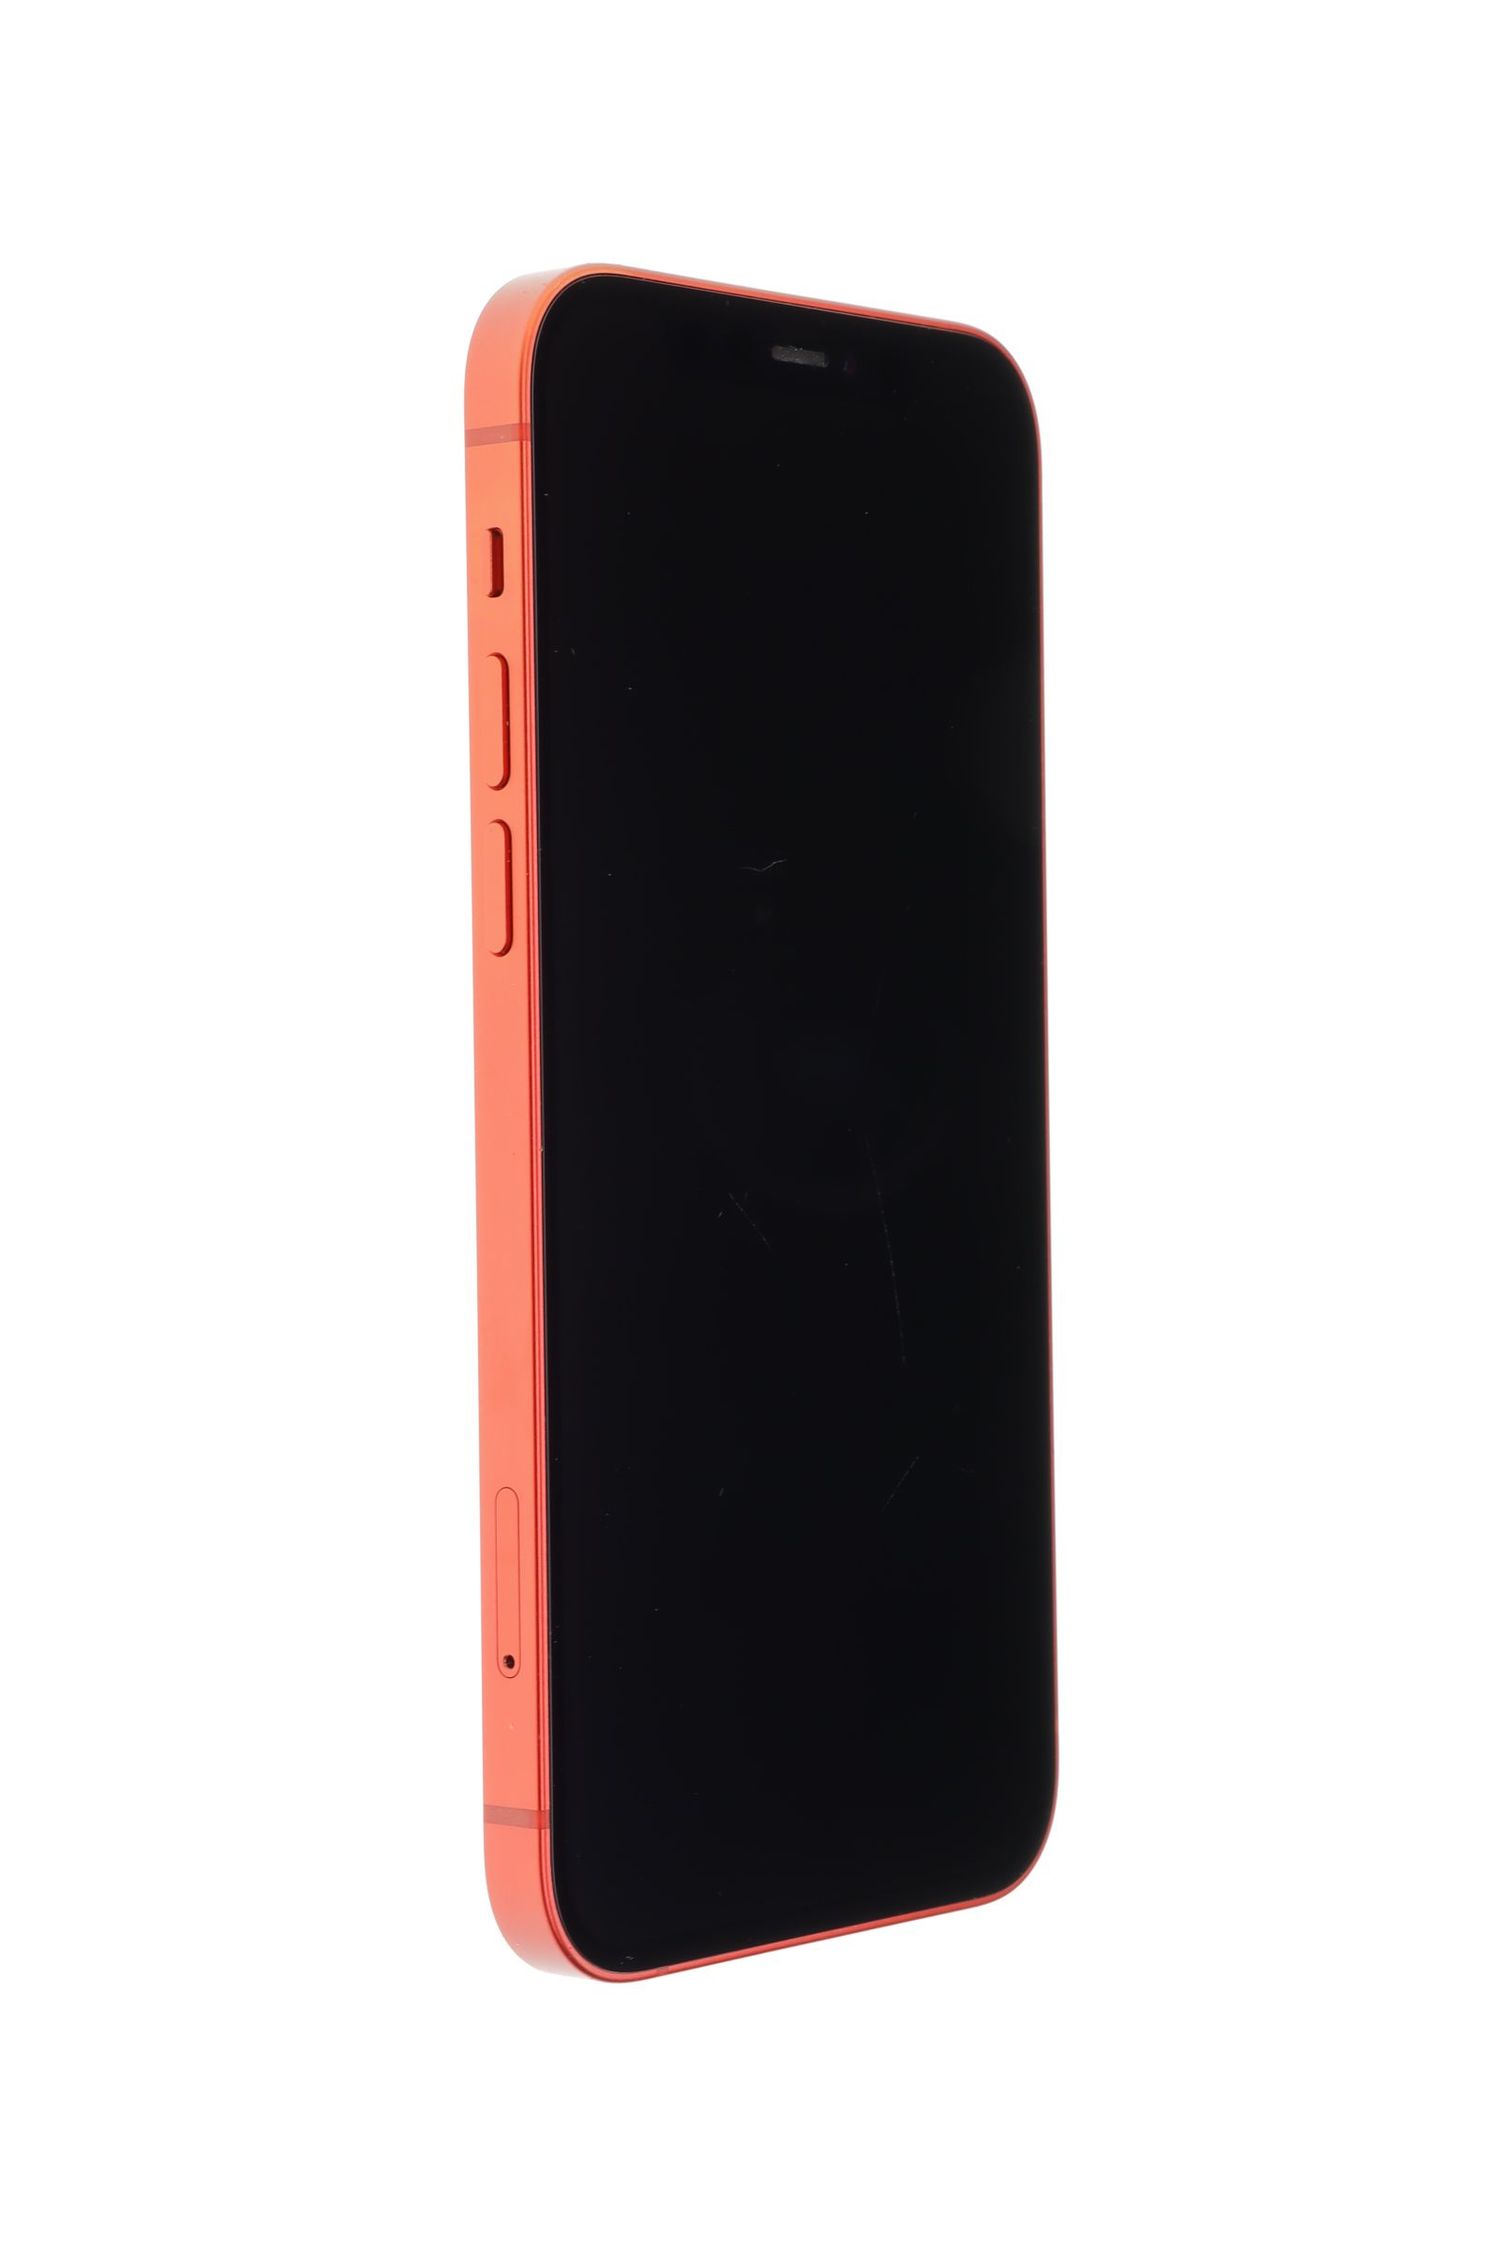 Telefon mobil Apple iPhone 12, Red, 64 GB, Foarte Bun